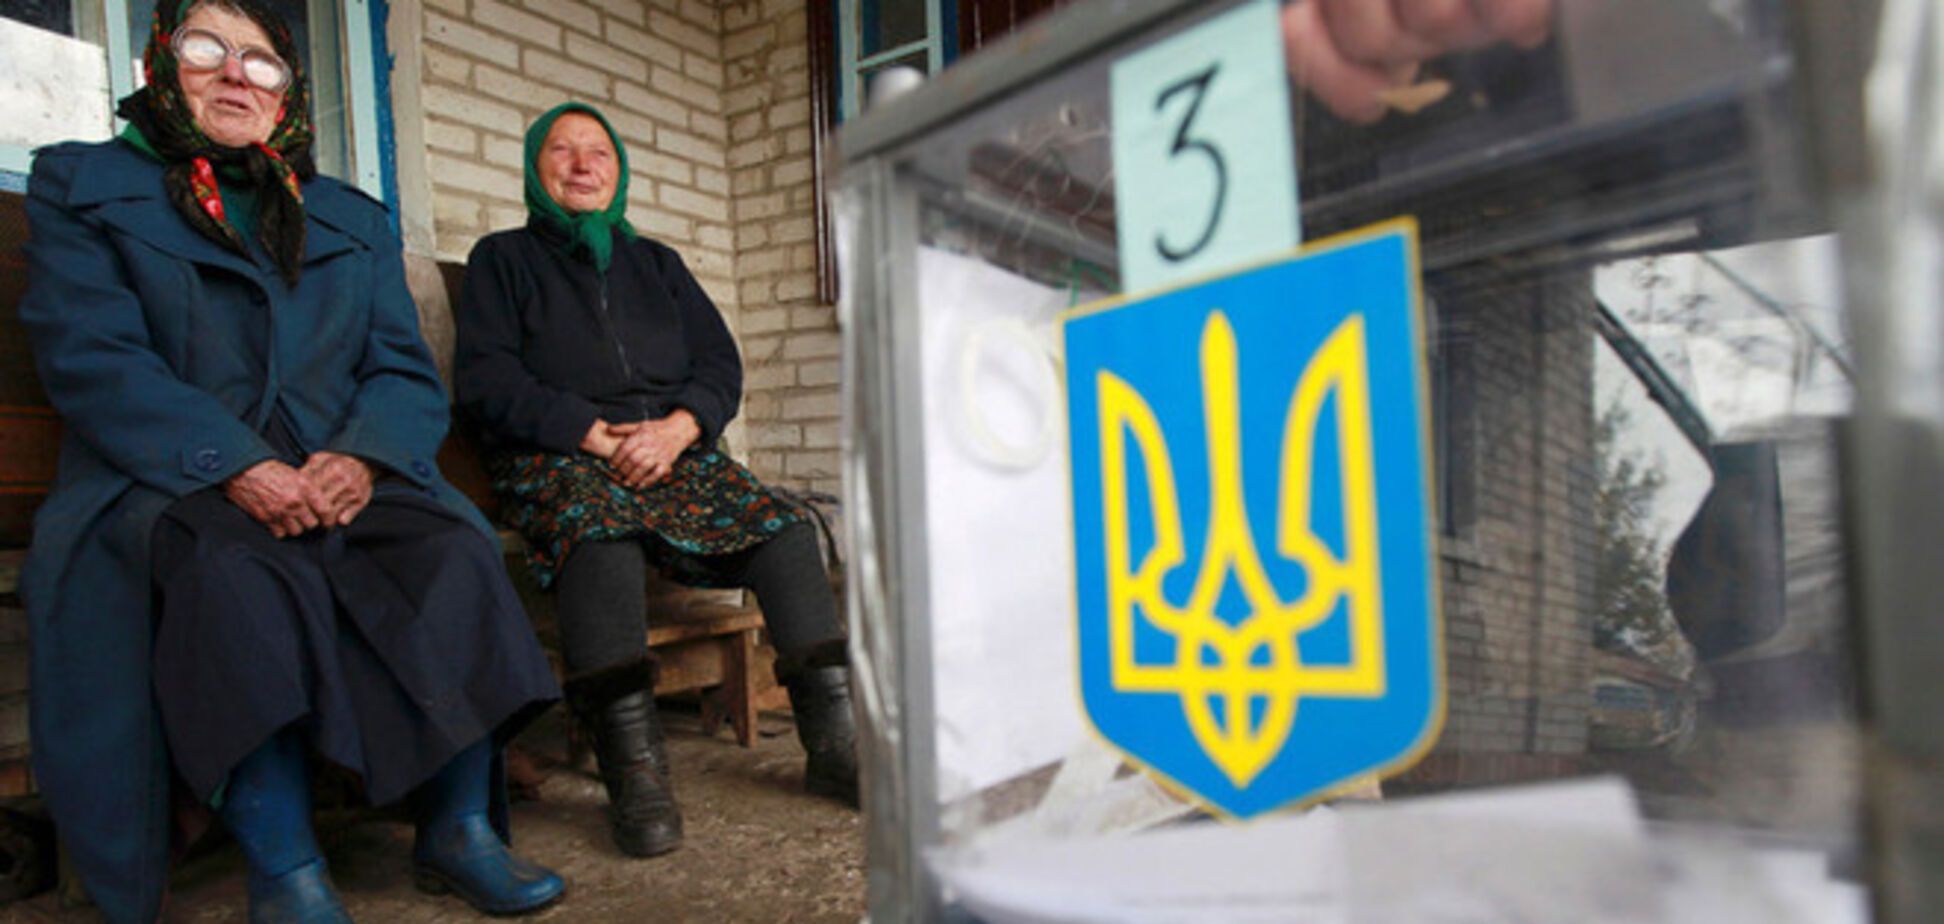 Политика Путина рекордно обвалила рейтинг пророссийских партий в Украине - Немцов